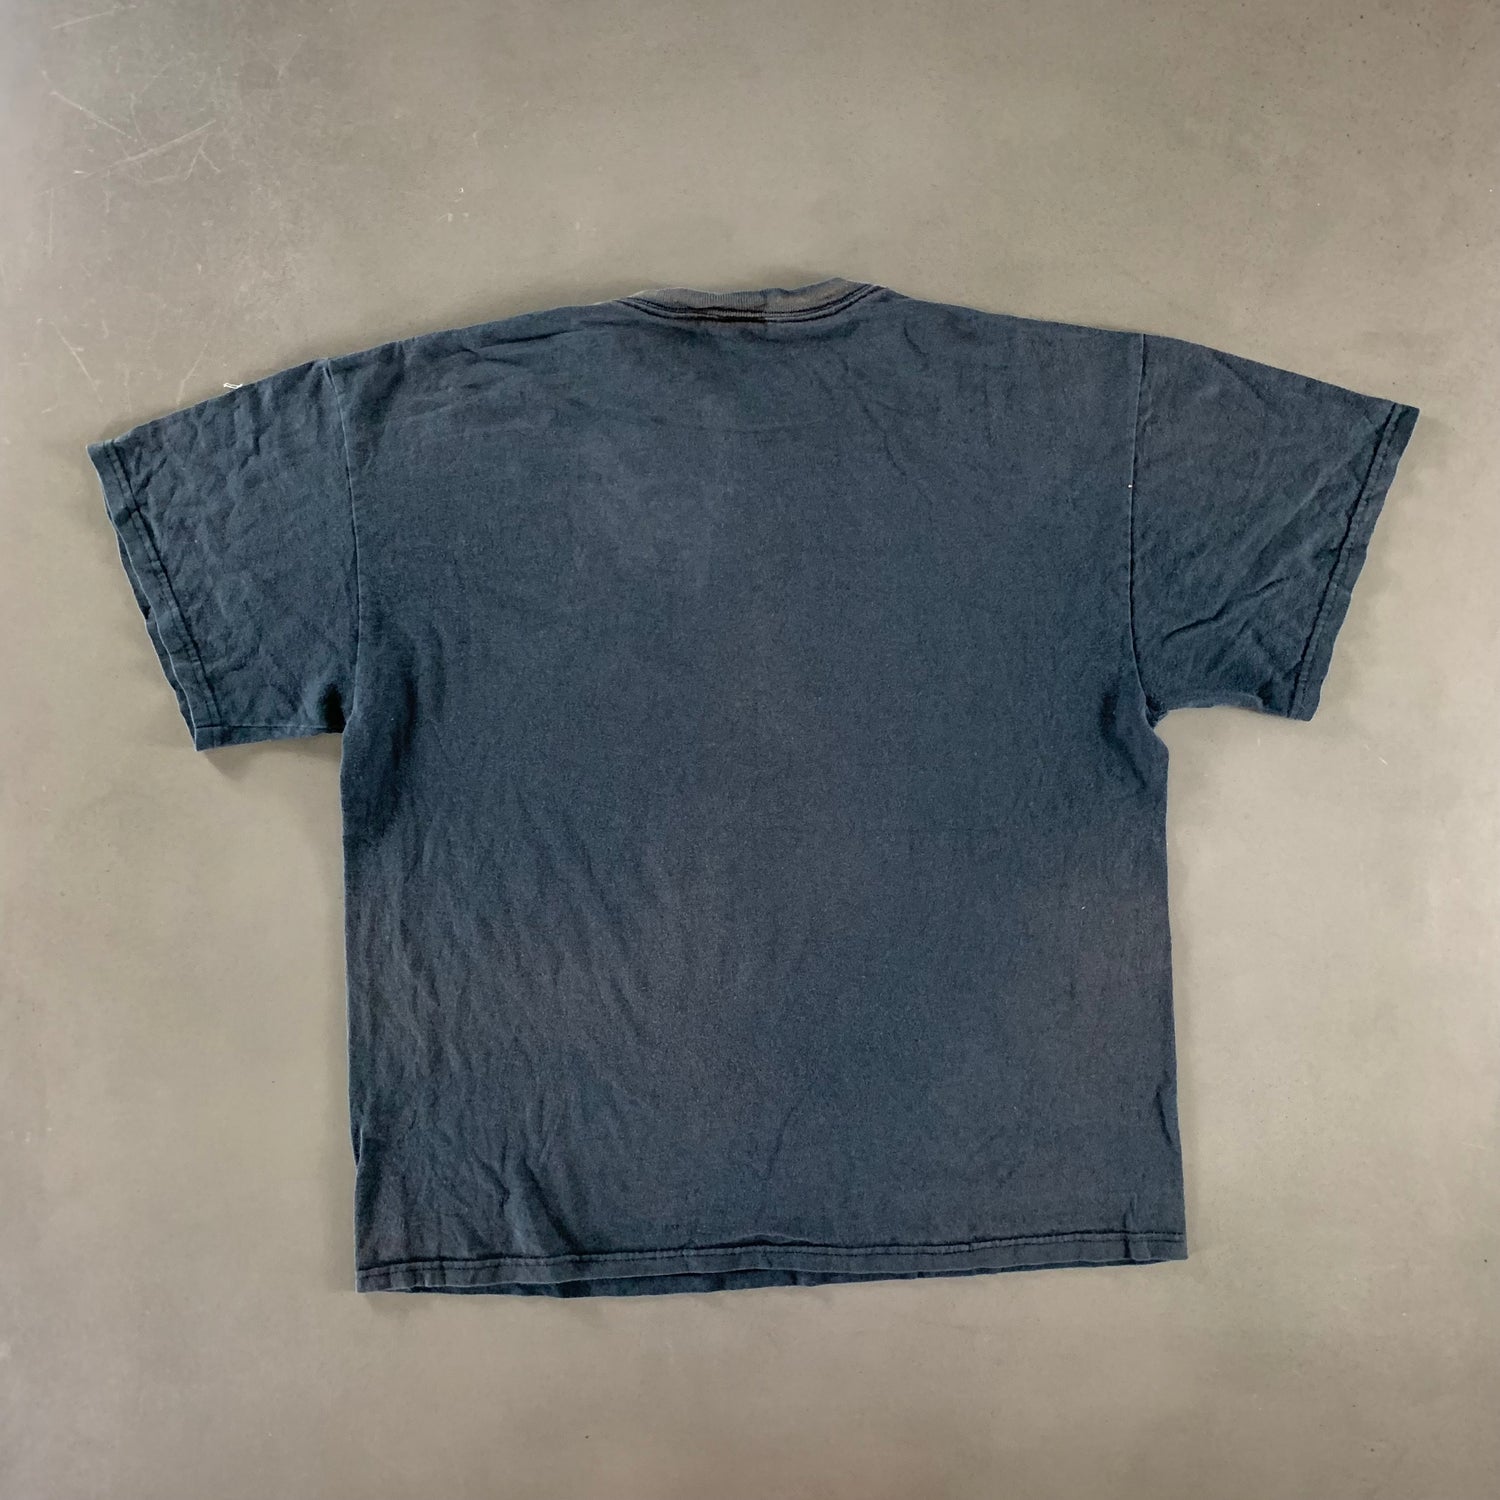 Vintage 1990s Jesus T-shirt size XL